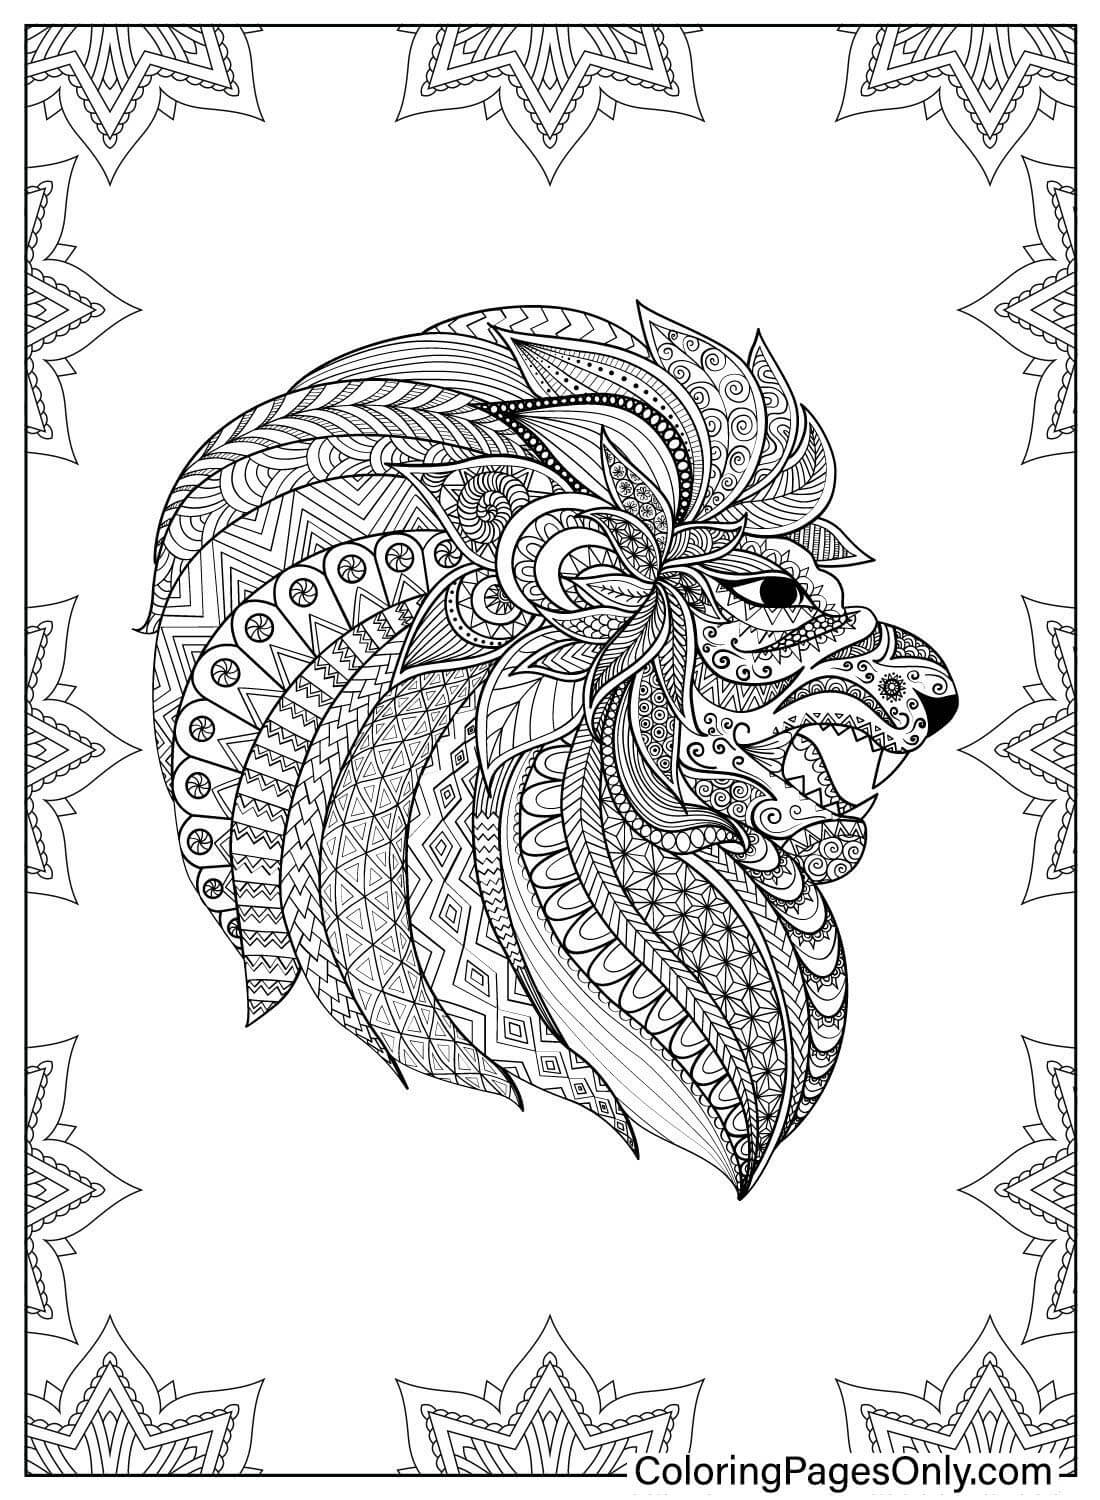 Página para colorear de mandala de león de León